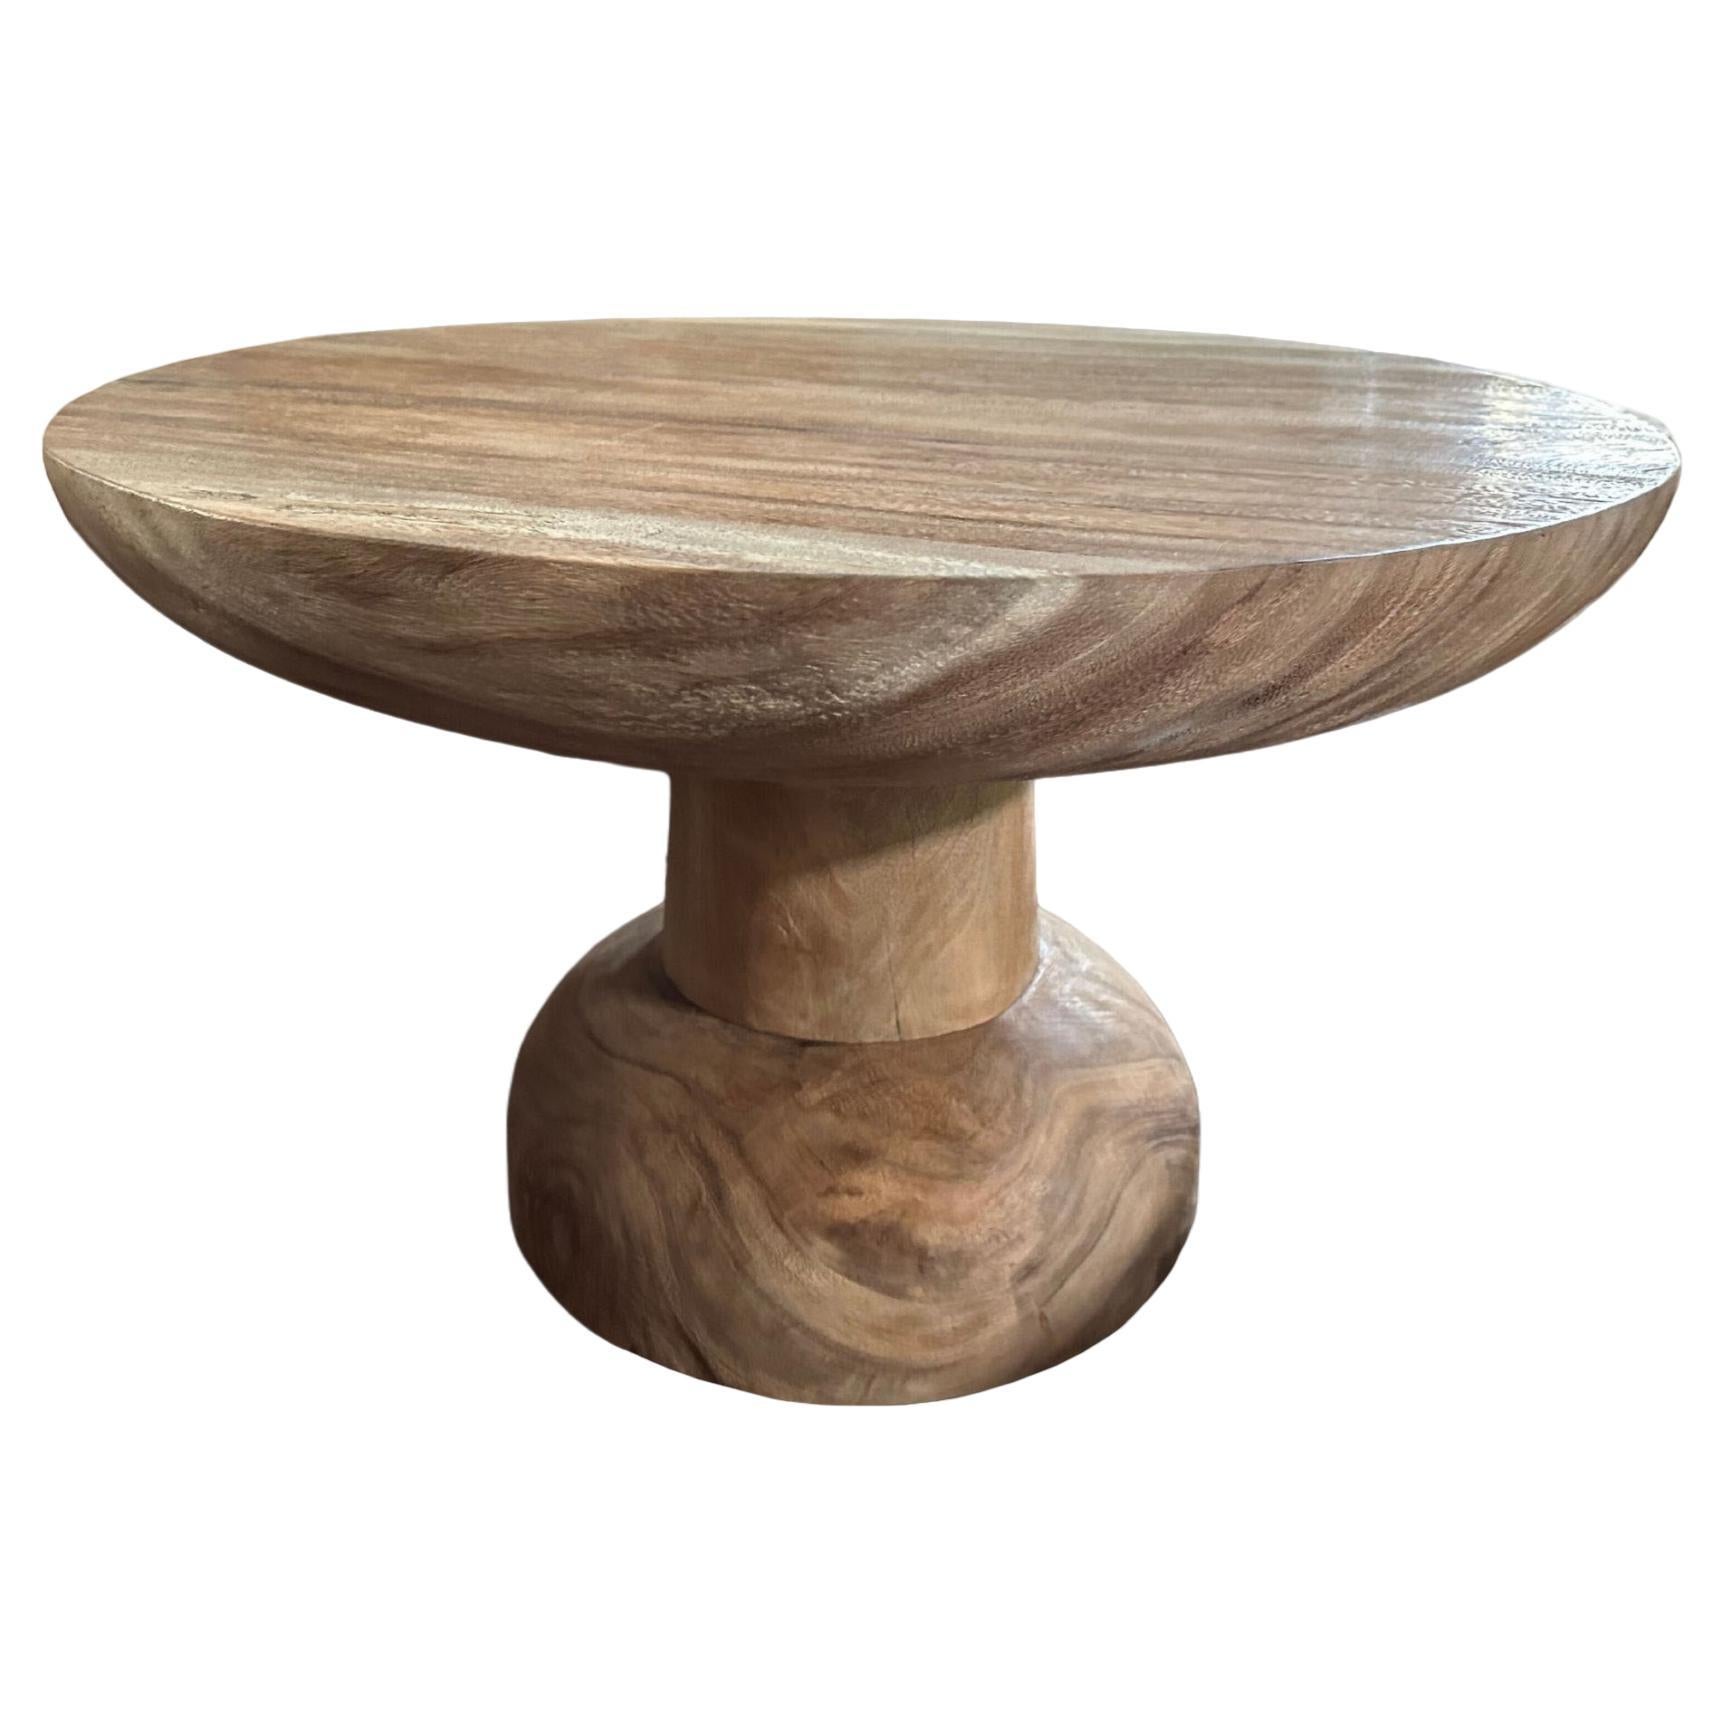 Table ronde sculpturale en bois de suar, organique moderne